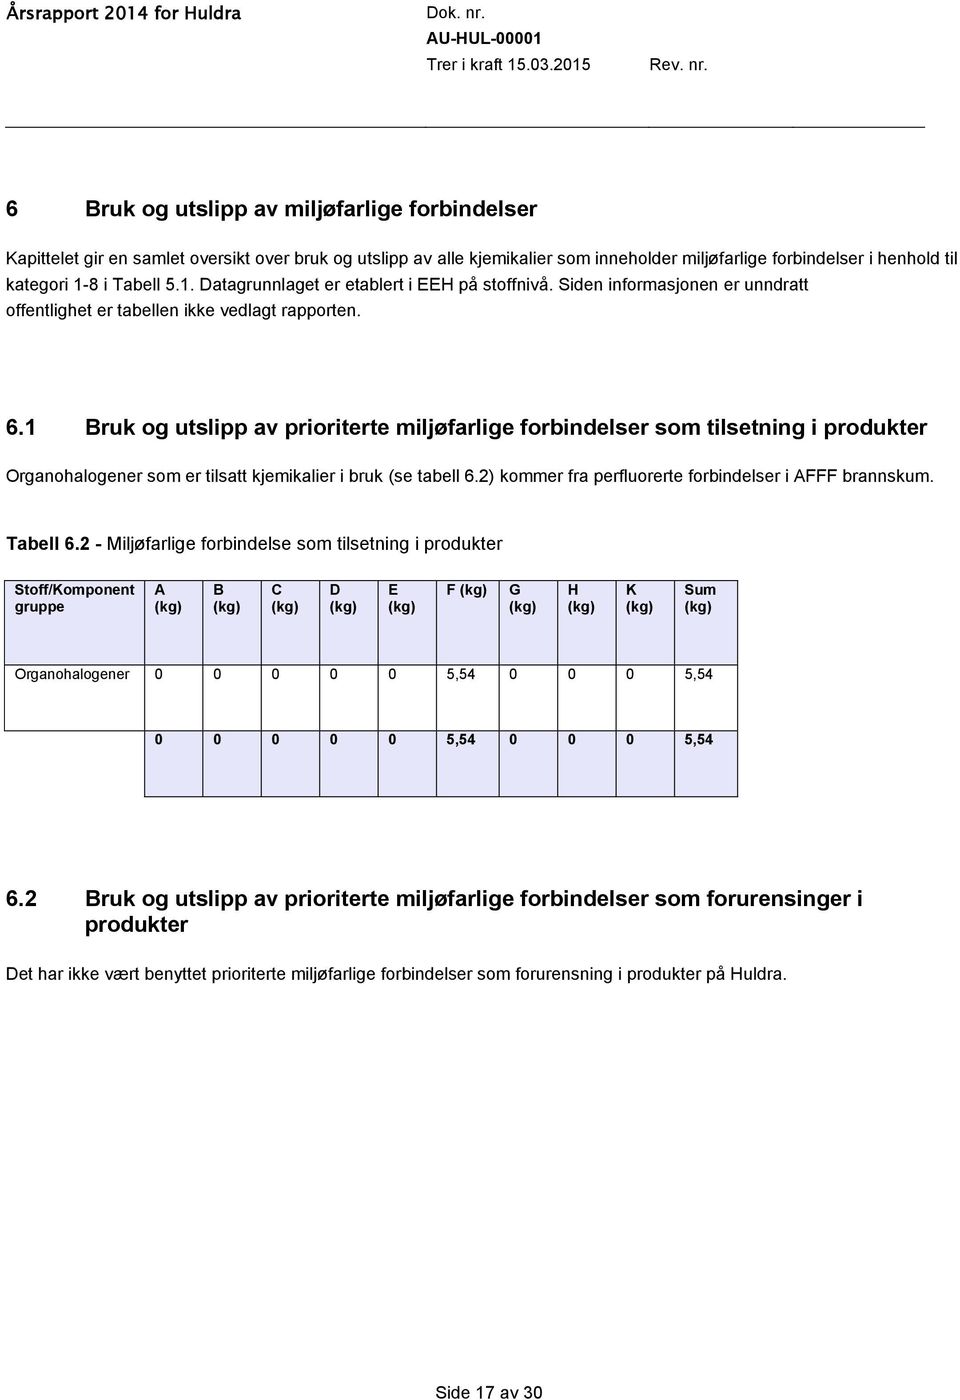 1 Bruk og utslipp av prioriterte miljøfarlige forbindelser som tilsetning i produkter Organohalogener som er tilsatt kjemikalier i bruk (se tabell 6.